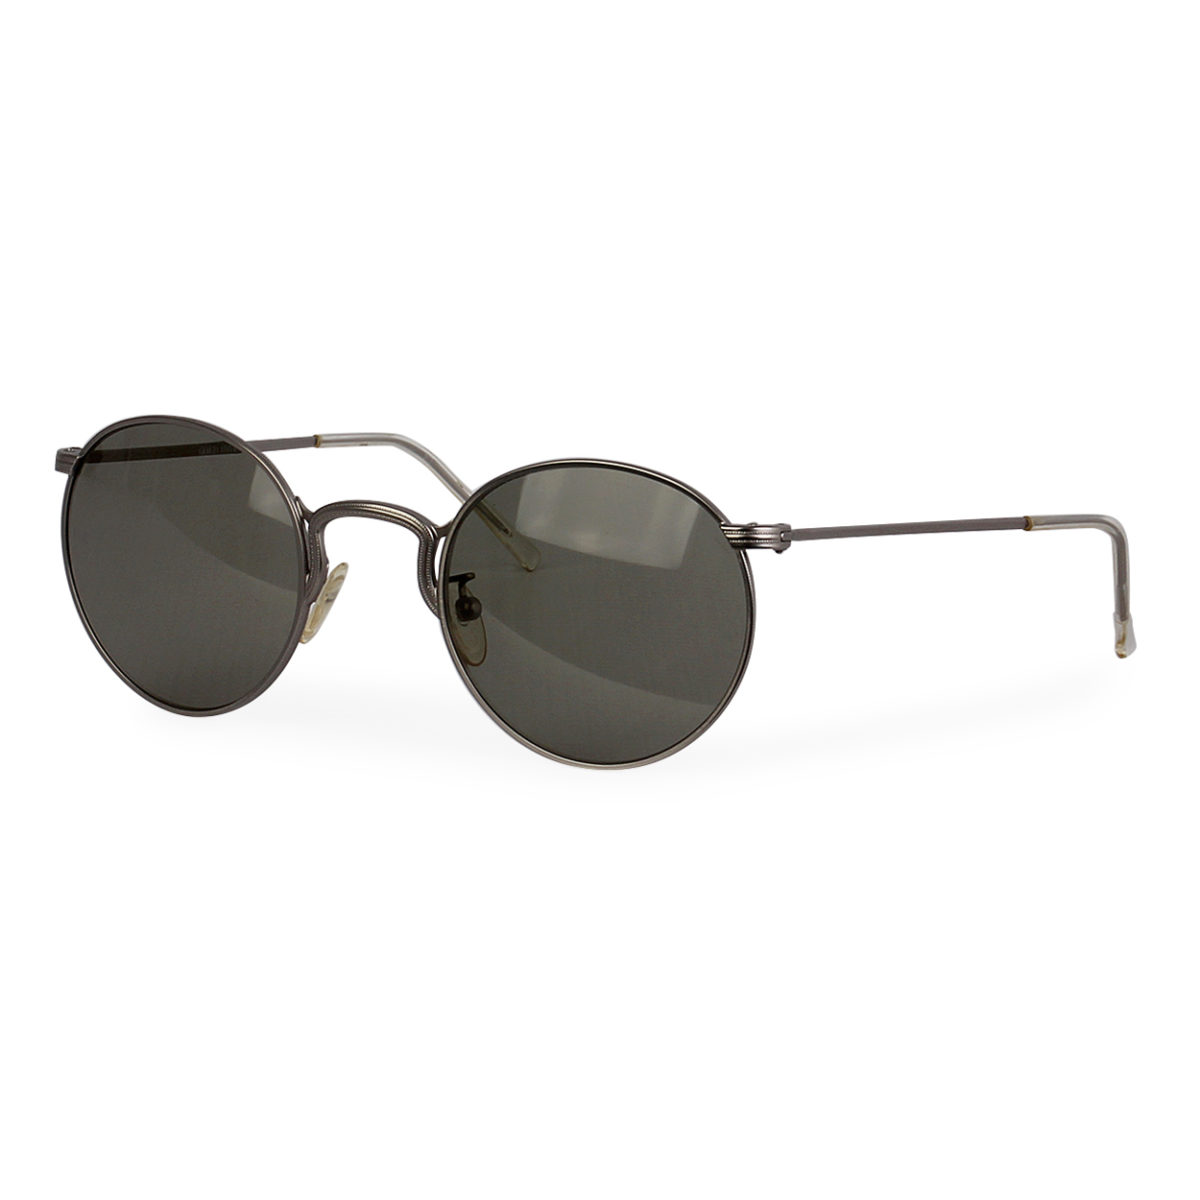 Giorgio Armani Round Sunglasses